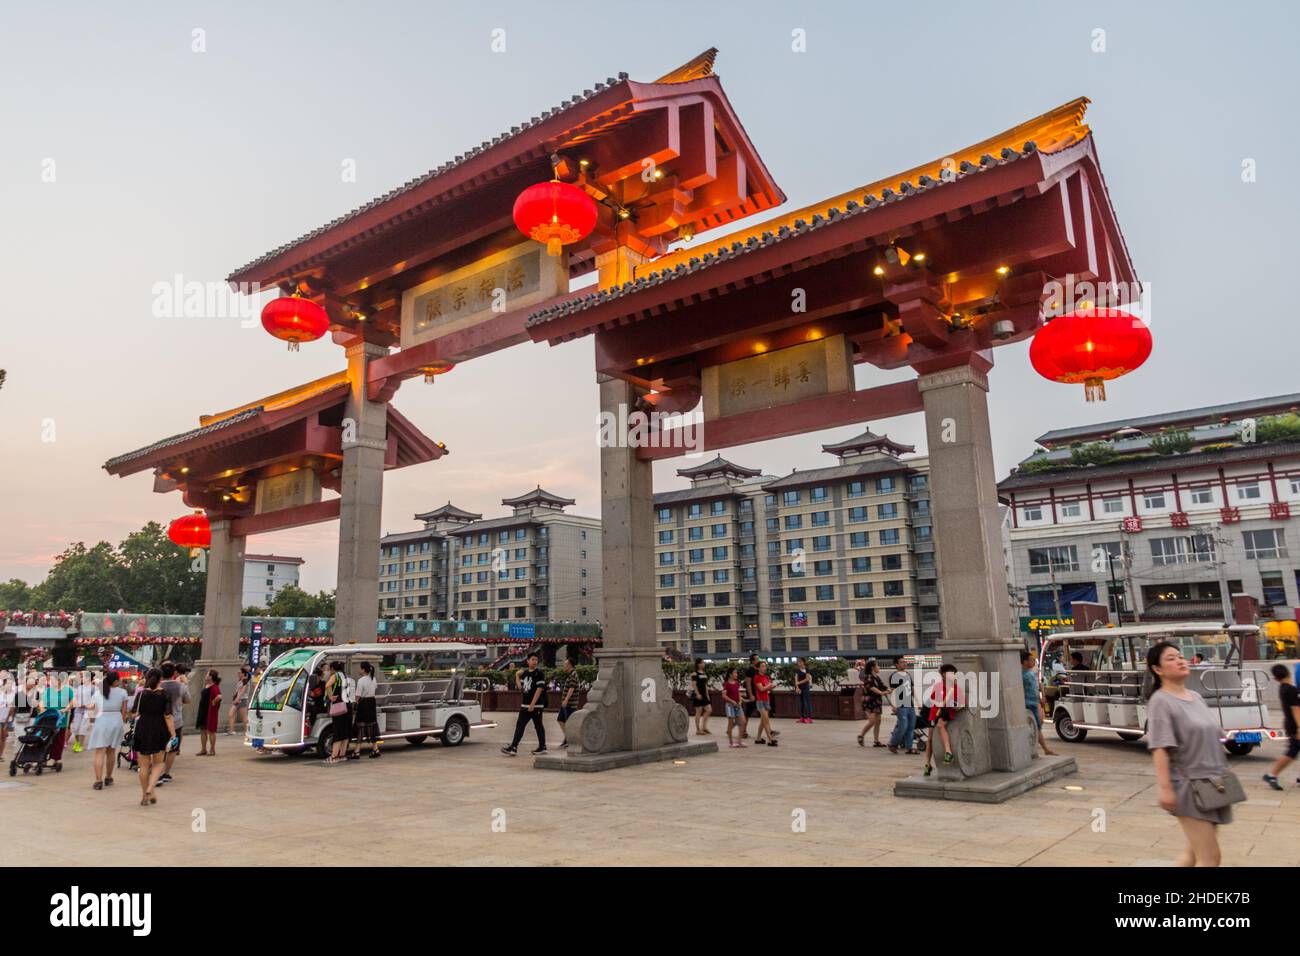 XI'AN, CHINE - 5 AOÛT 2018 : arche devant la Grande Pagode de l'OIE sauvage à Xi'an, Chine Banque D'Images